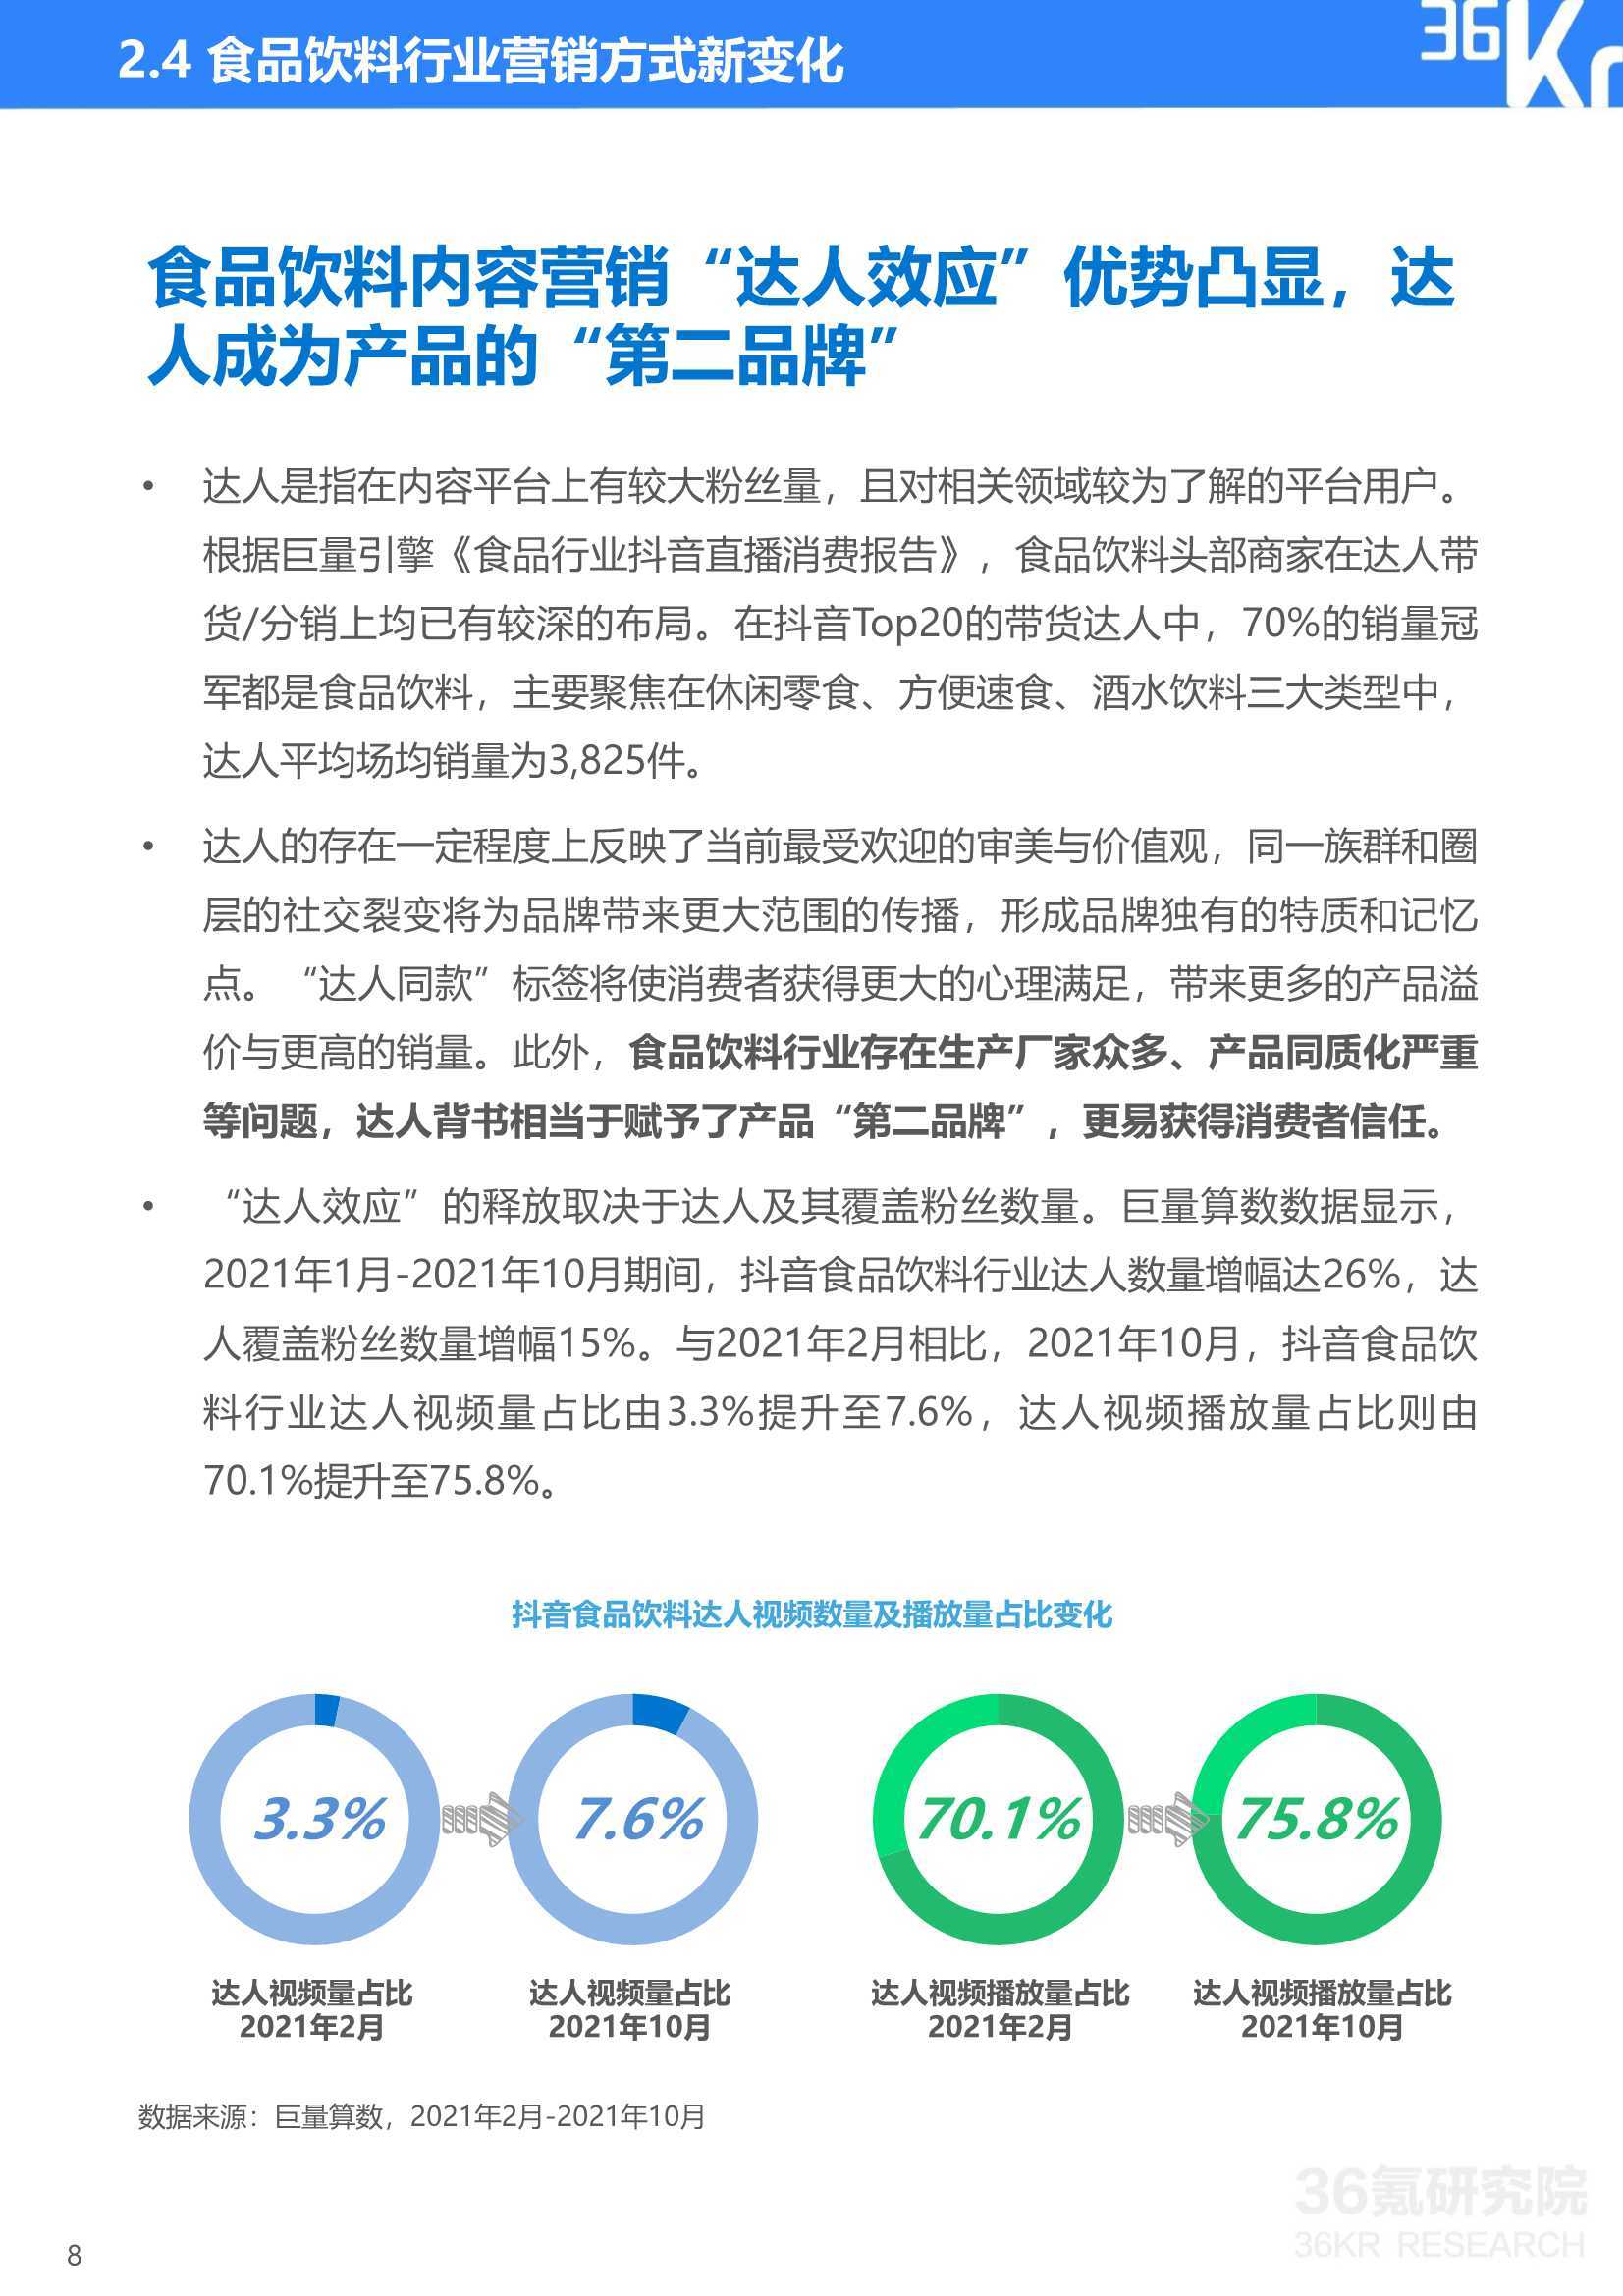 21中国新锐品牌发展研究 食品饮料行业报告 电商运营 侠说 报告来了